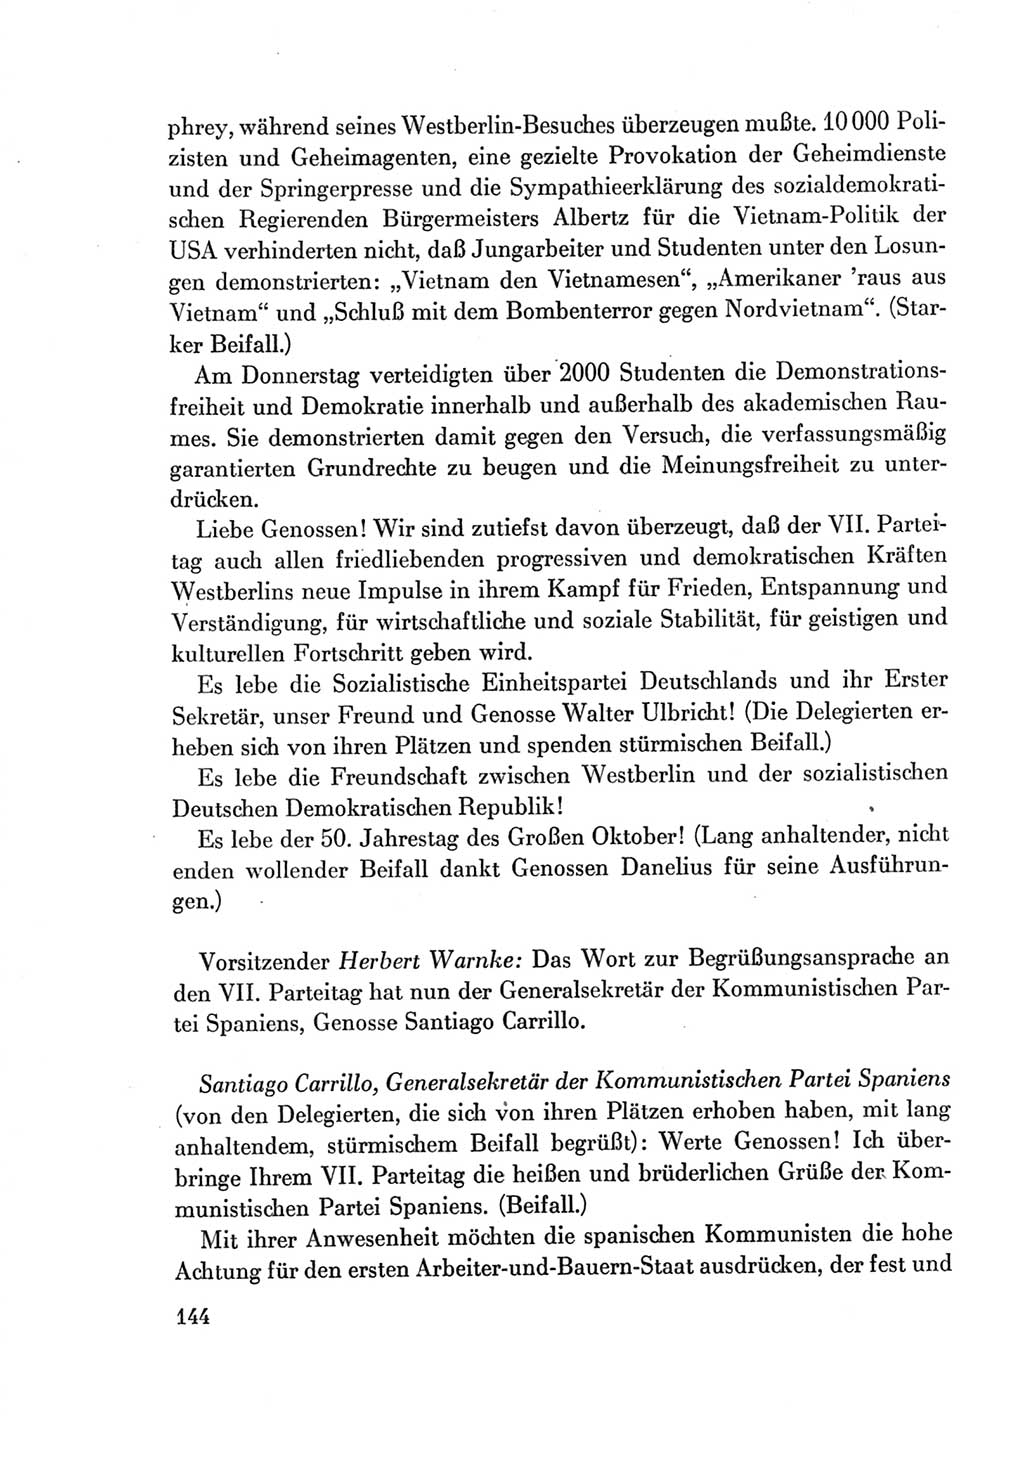 Protokoll der Verhandlungen des Ⅶ. Parteitages der Sozialistischen Einheitspartei Deutschlands (SED) [Deutsche Demokratische Republik (DDR)] 1967, Band Ⅱ, Seite 144 (Prot. Verh. Ⅶ. PT SED DDR 1967, Bd. Ⅱ, S. 144)